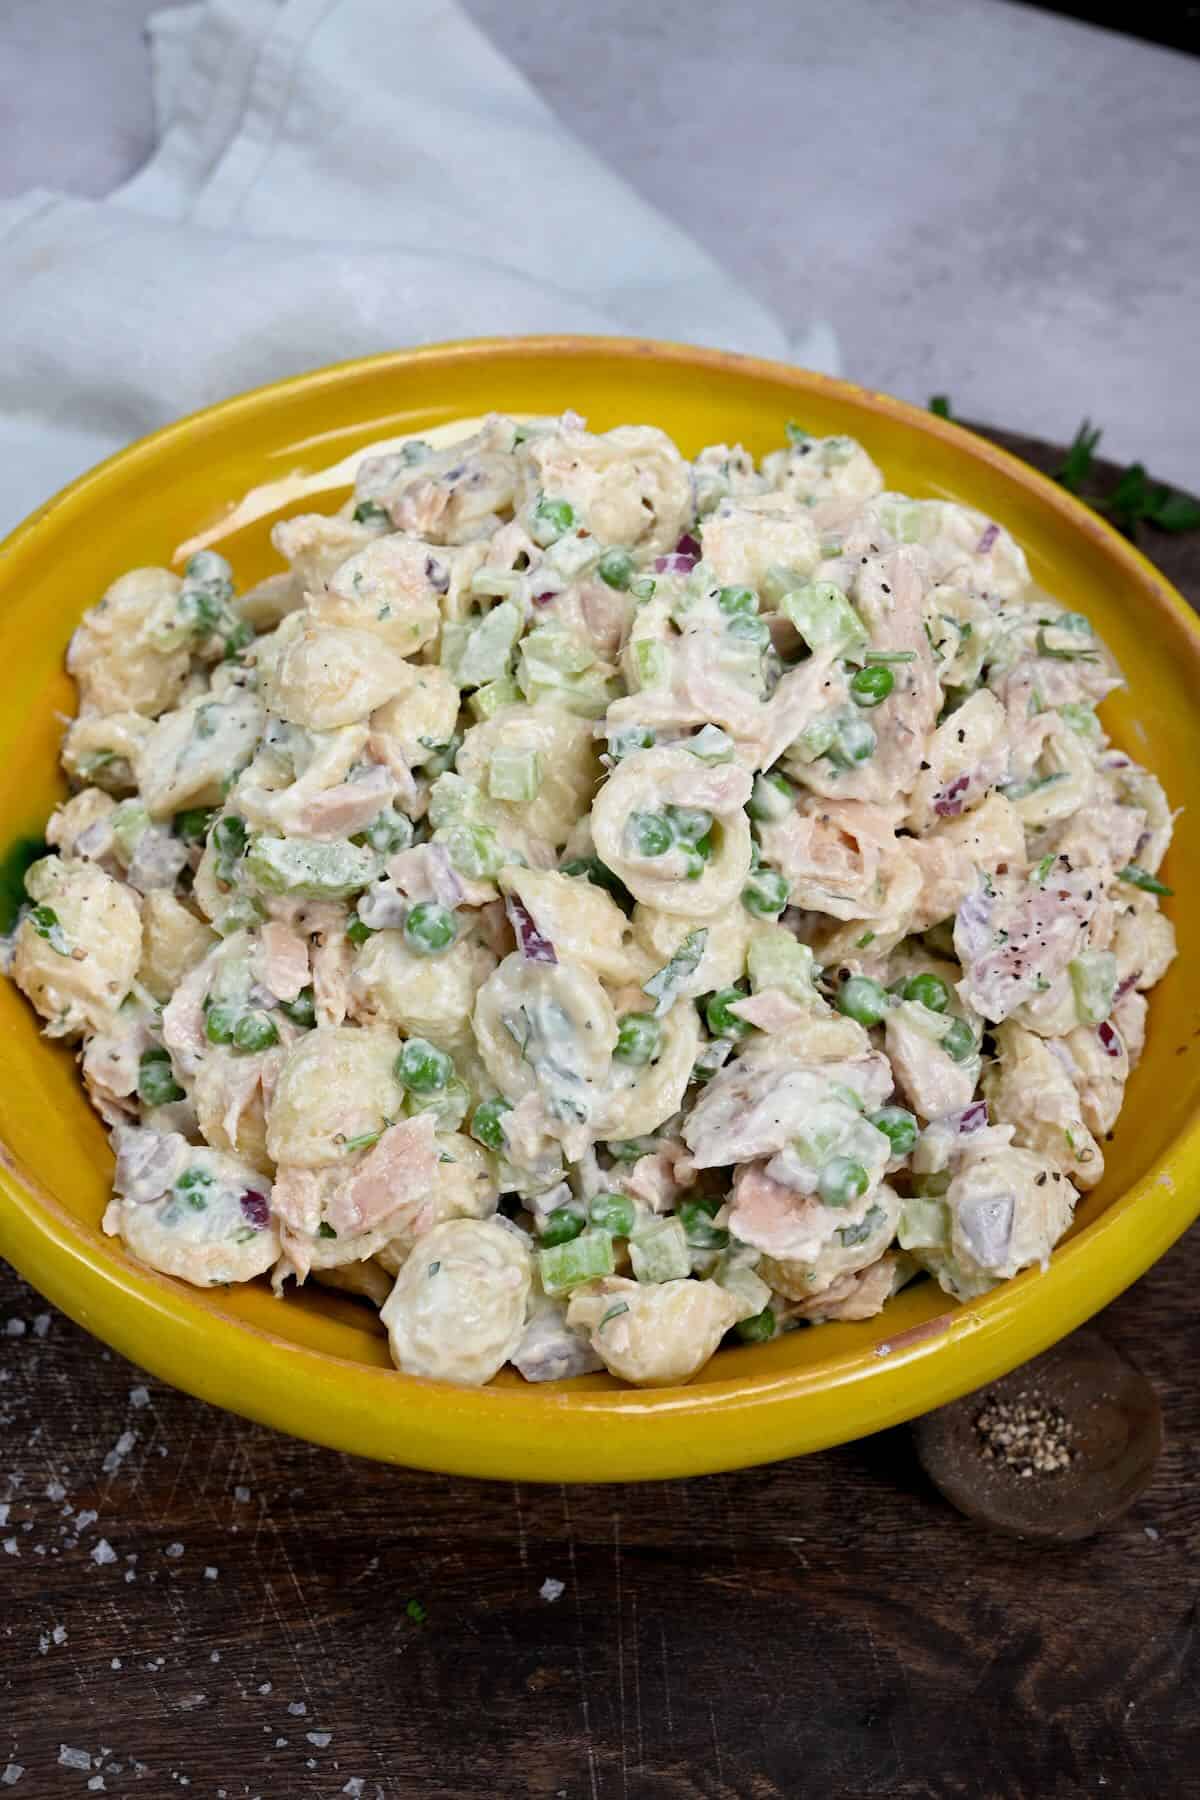 A serving of tuna pasta salad